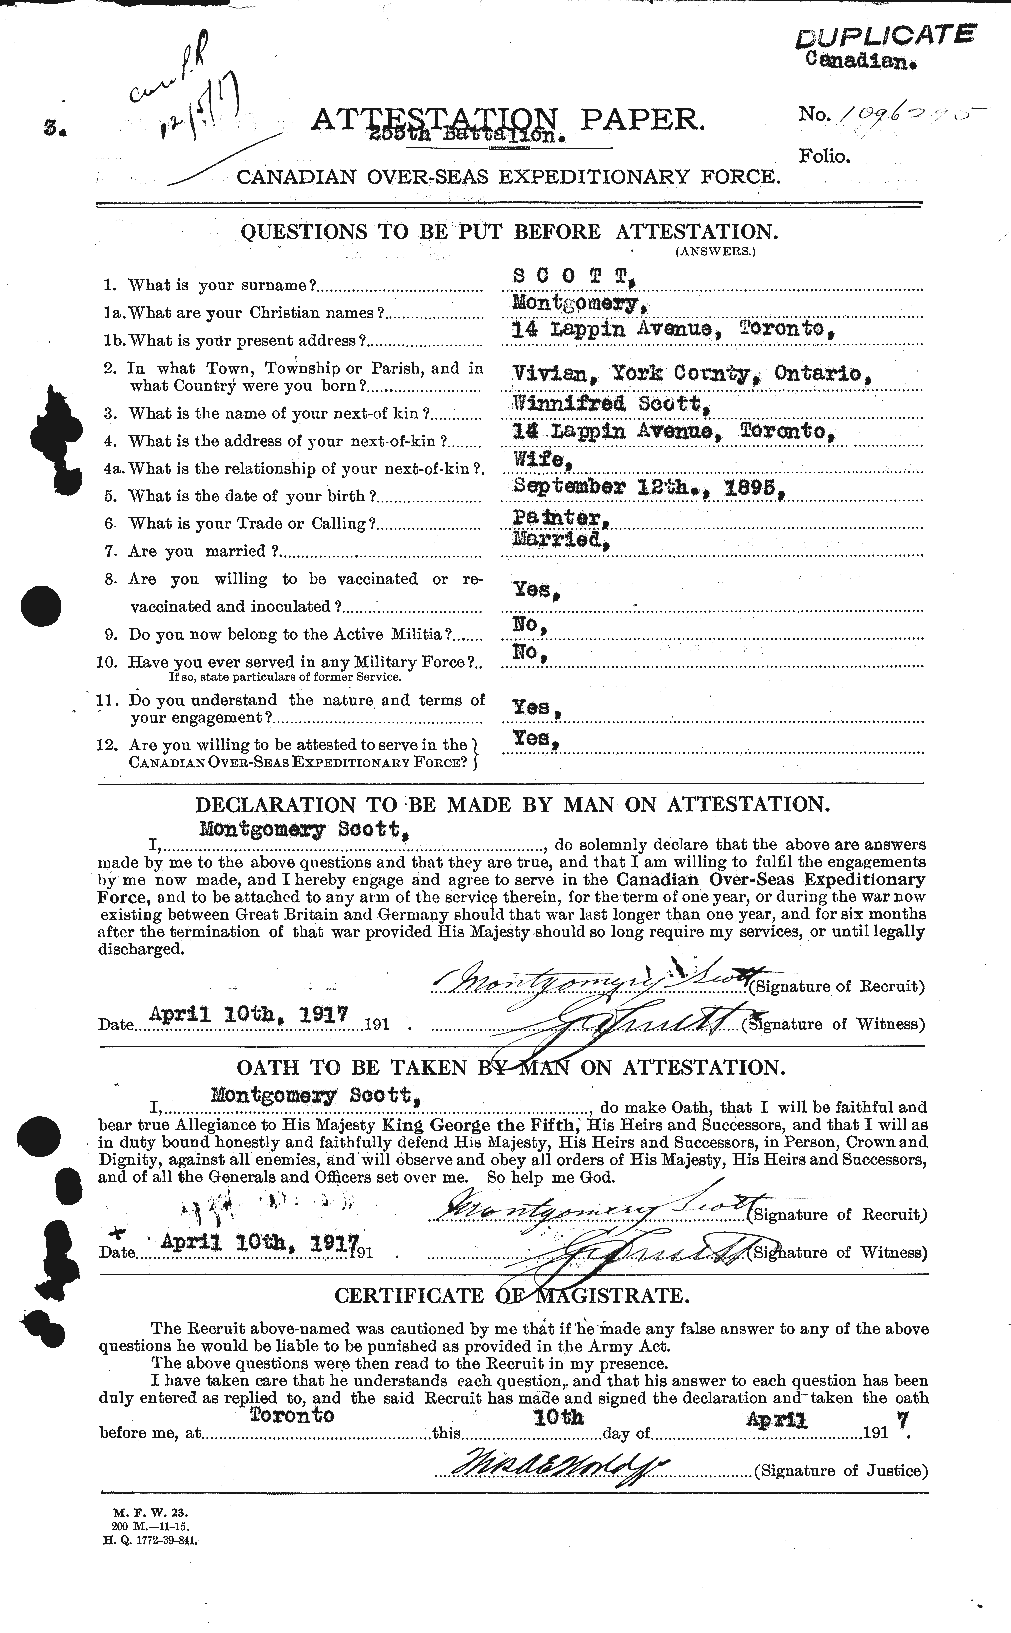 Dossiers du Personnel de la Première Guerre mondiale - CEC 083489a